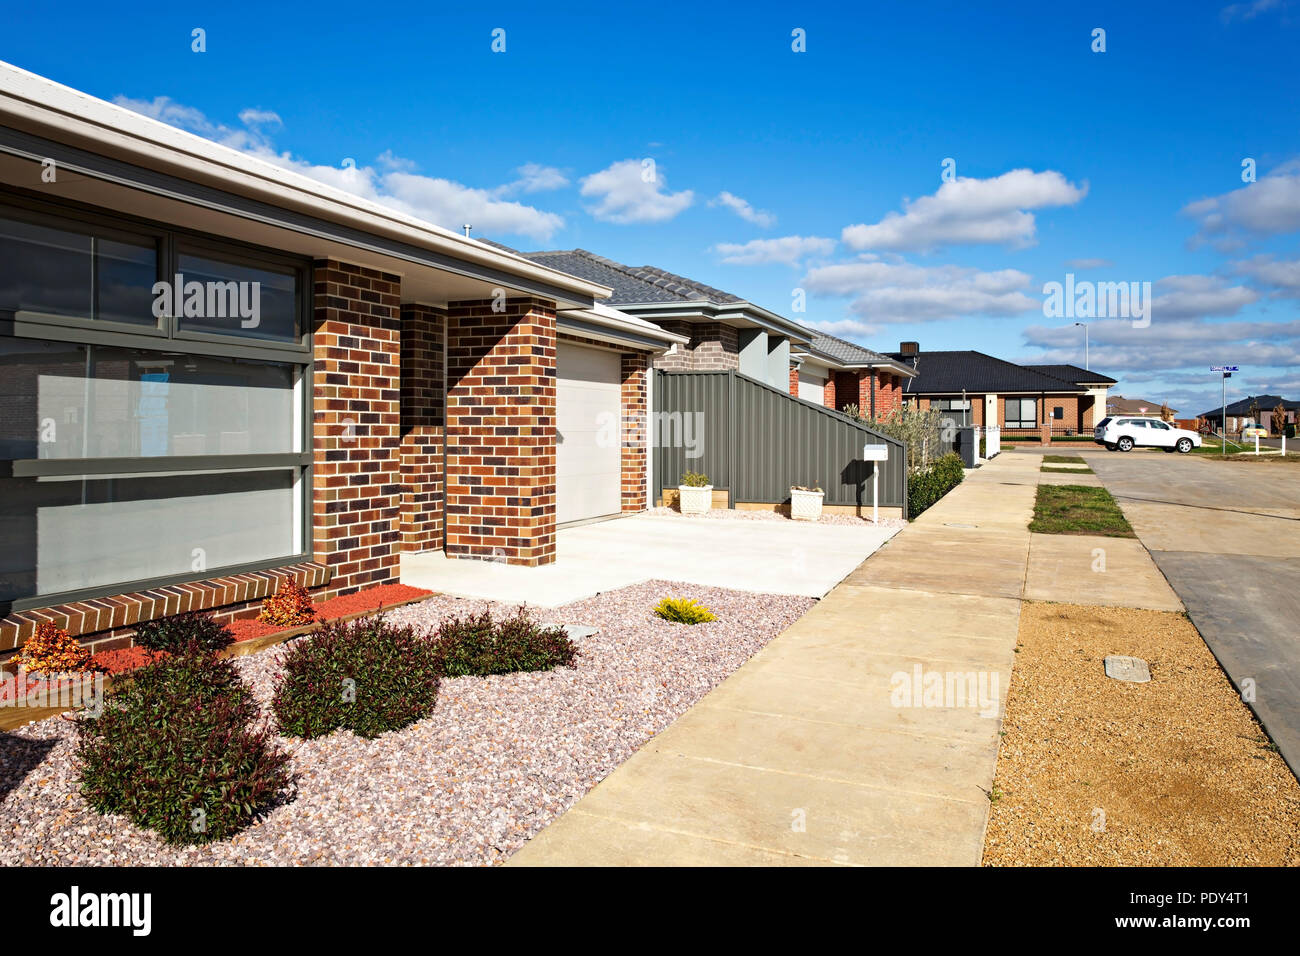 La banlieue de Ballarat Lucas,a été créé en juin 2011.La banlieue auront finalement jusqu'à 14 000 foyers.Un centre commercial avec un grand supermar Banque D'Images